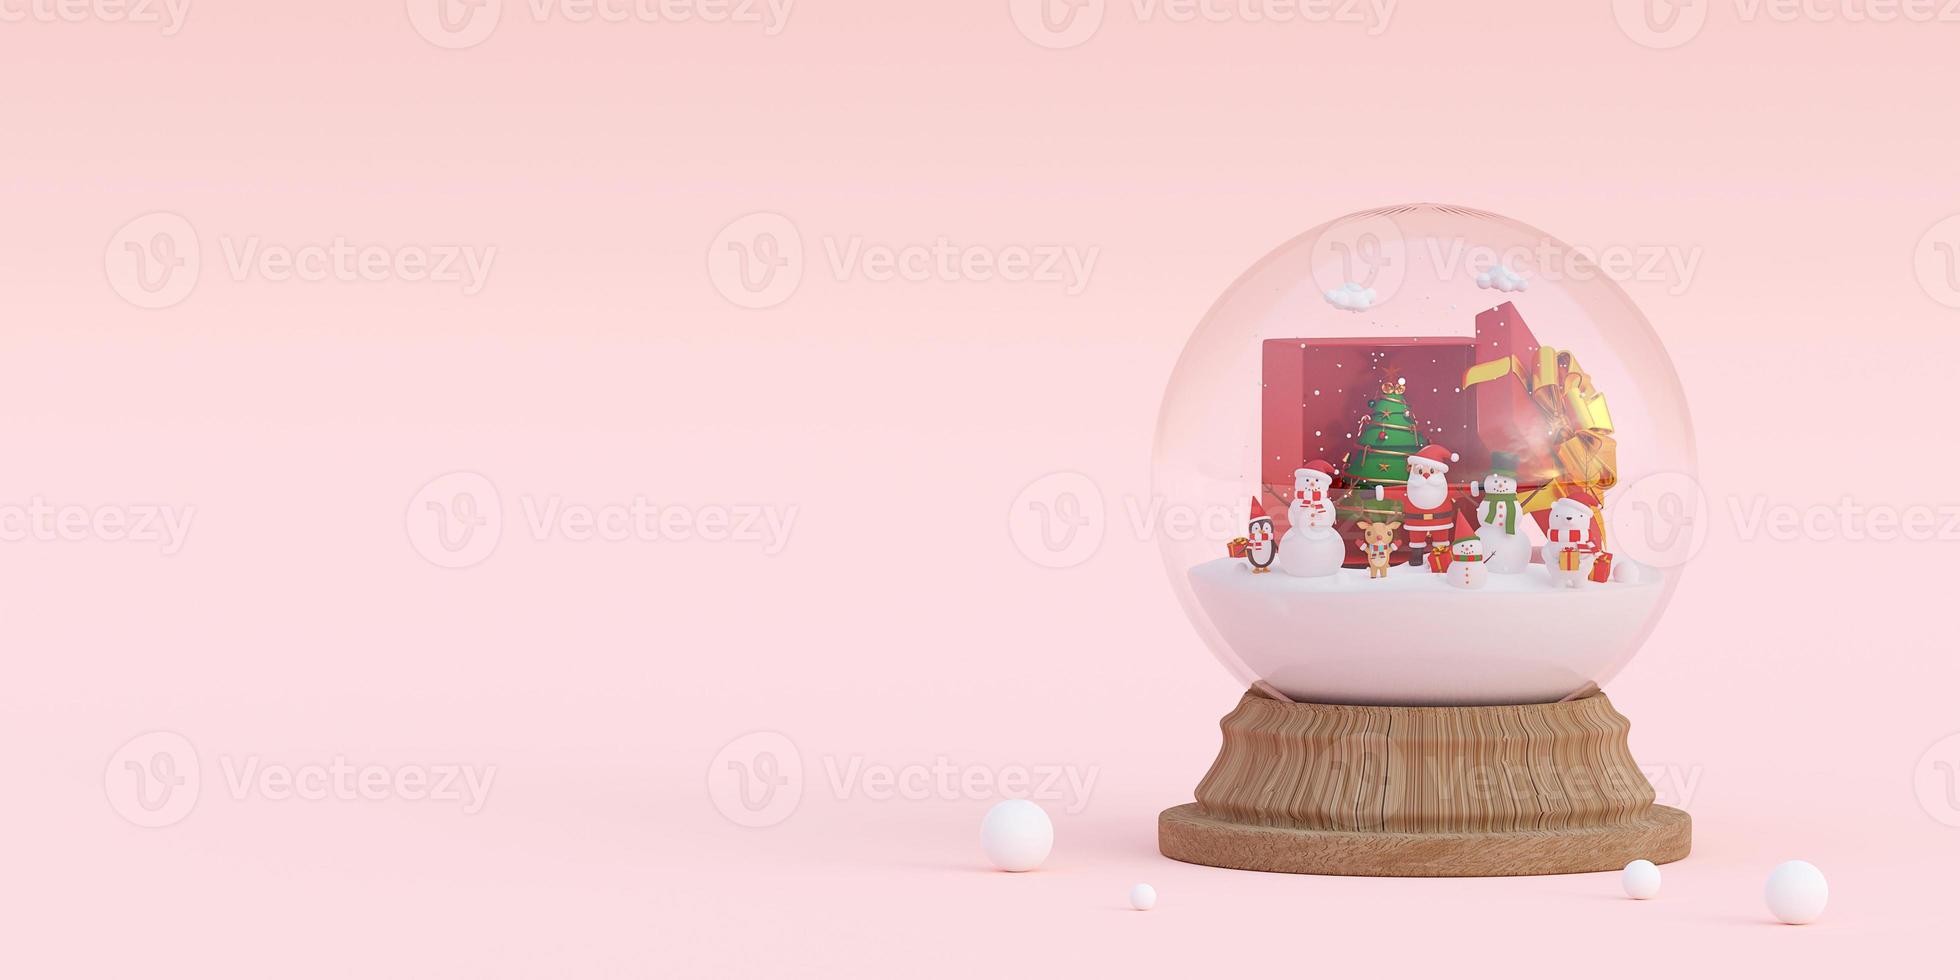 buon natale e felice anno nuovo, striscione della celebrazione del natale con babbo natale e amici in un globo di neve, rendering 3d foto